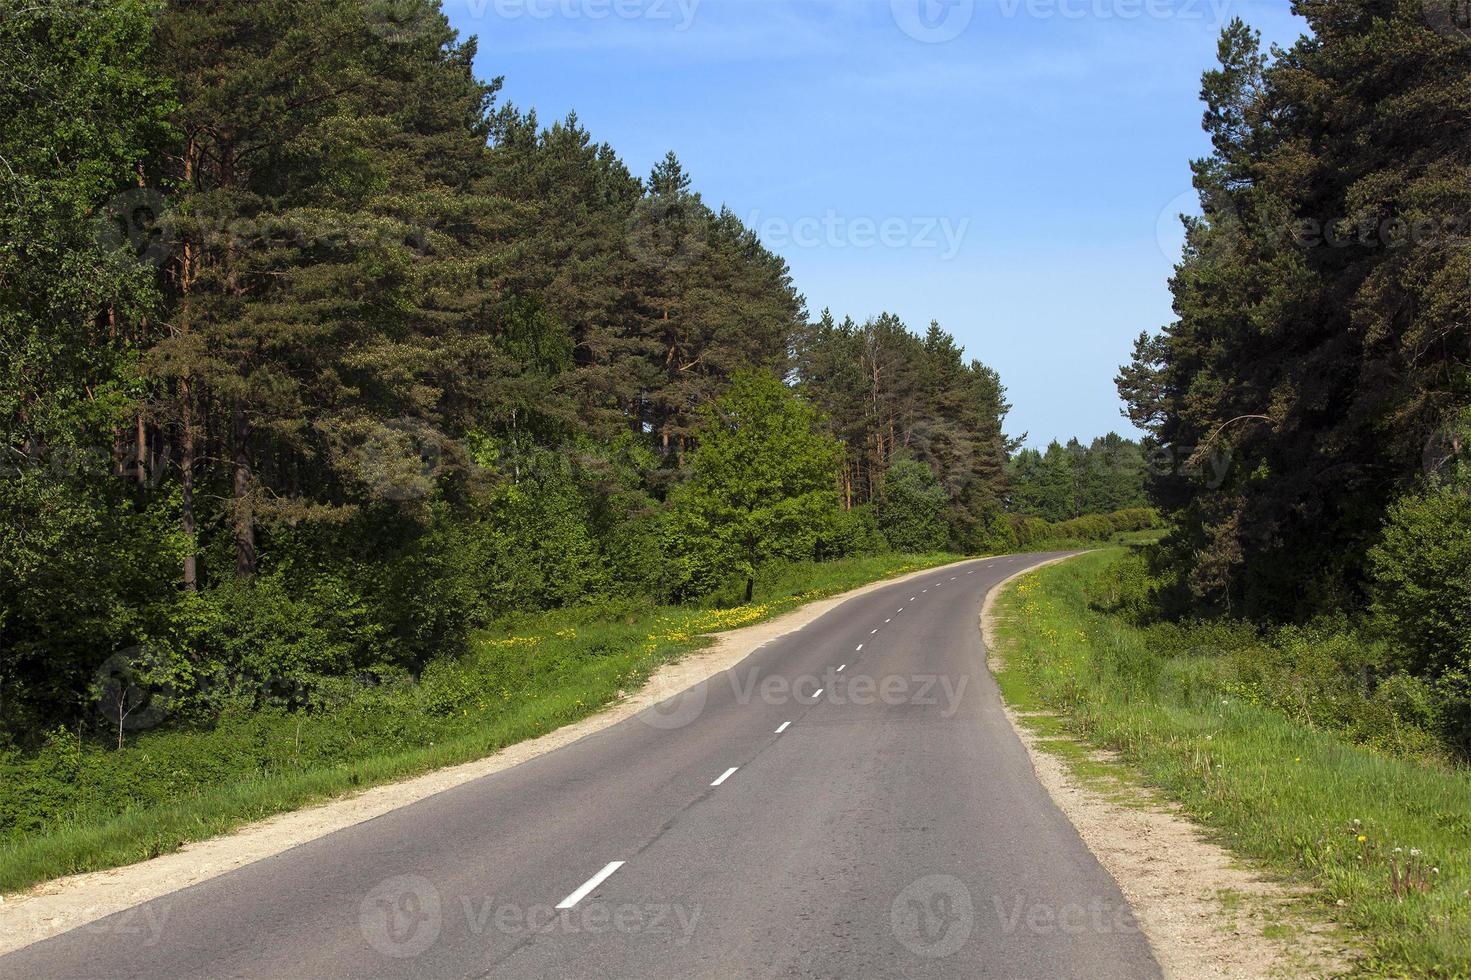 la petite route - la petite route goudronnée qui contourne le bois. le printemps photo